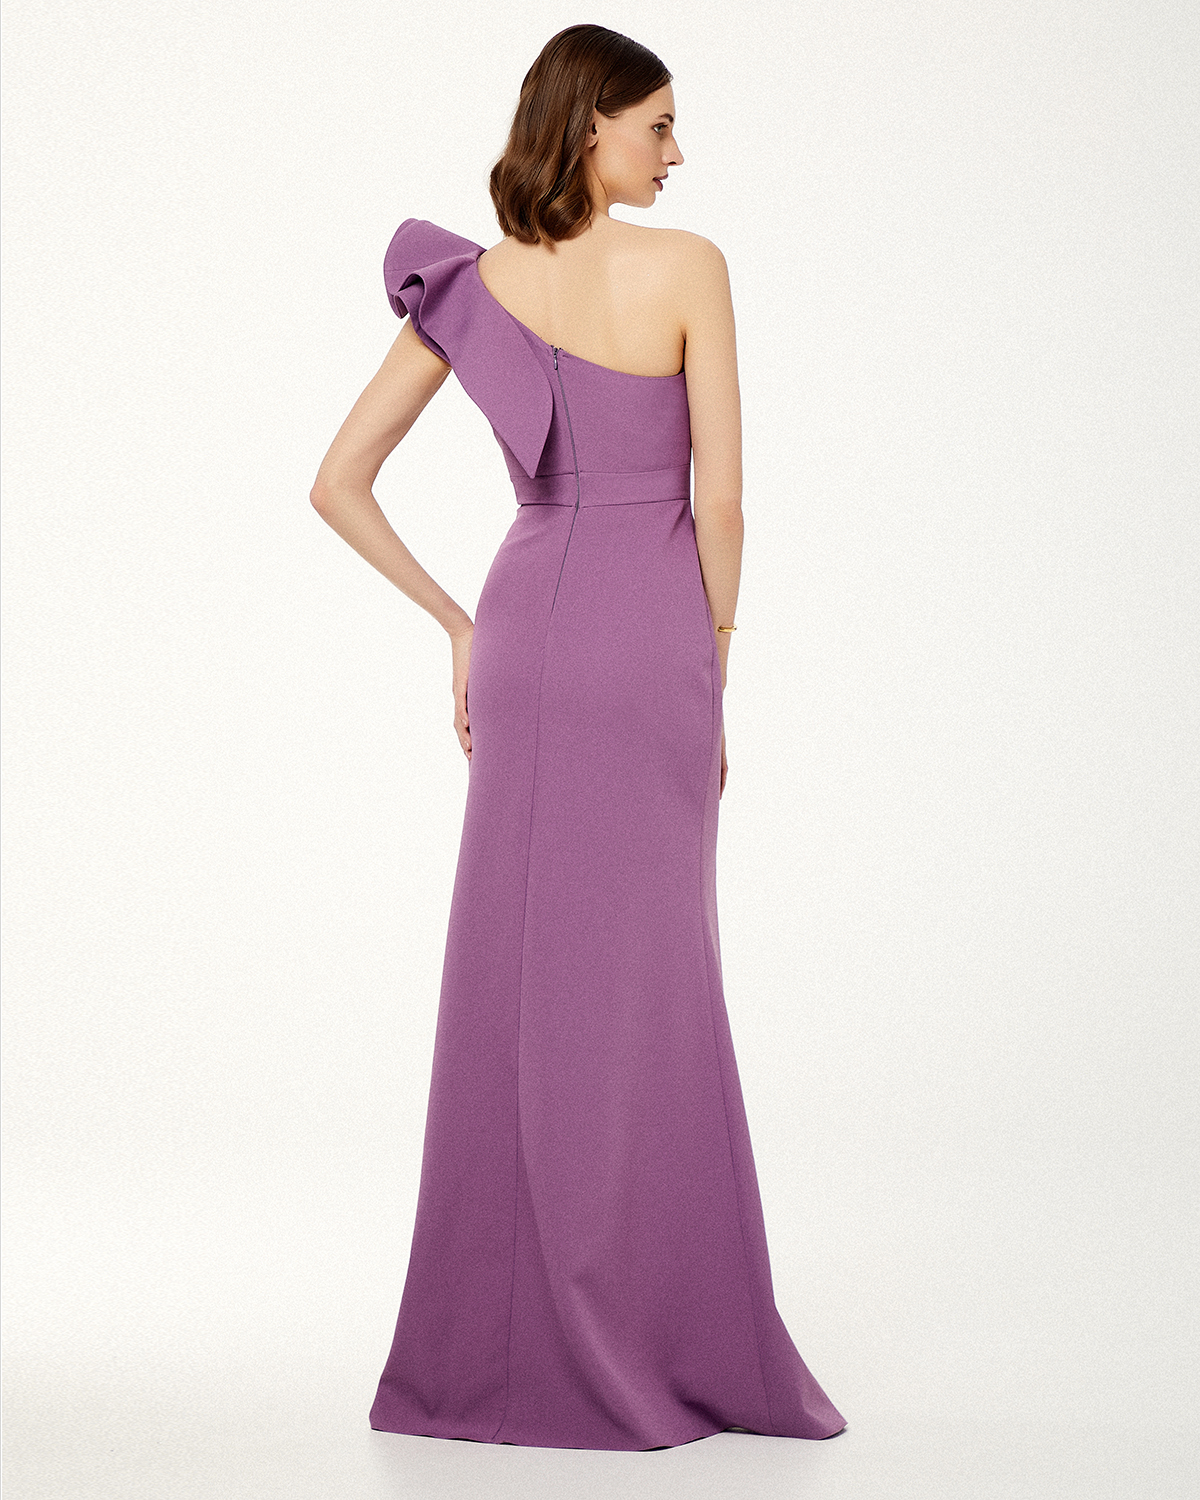 Cocktail Dresses / One shoulder long cocktail dress